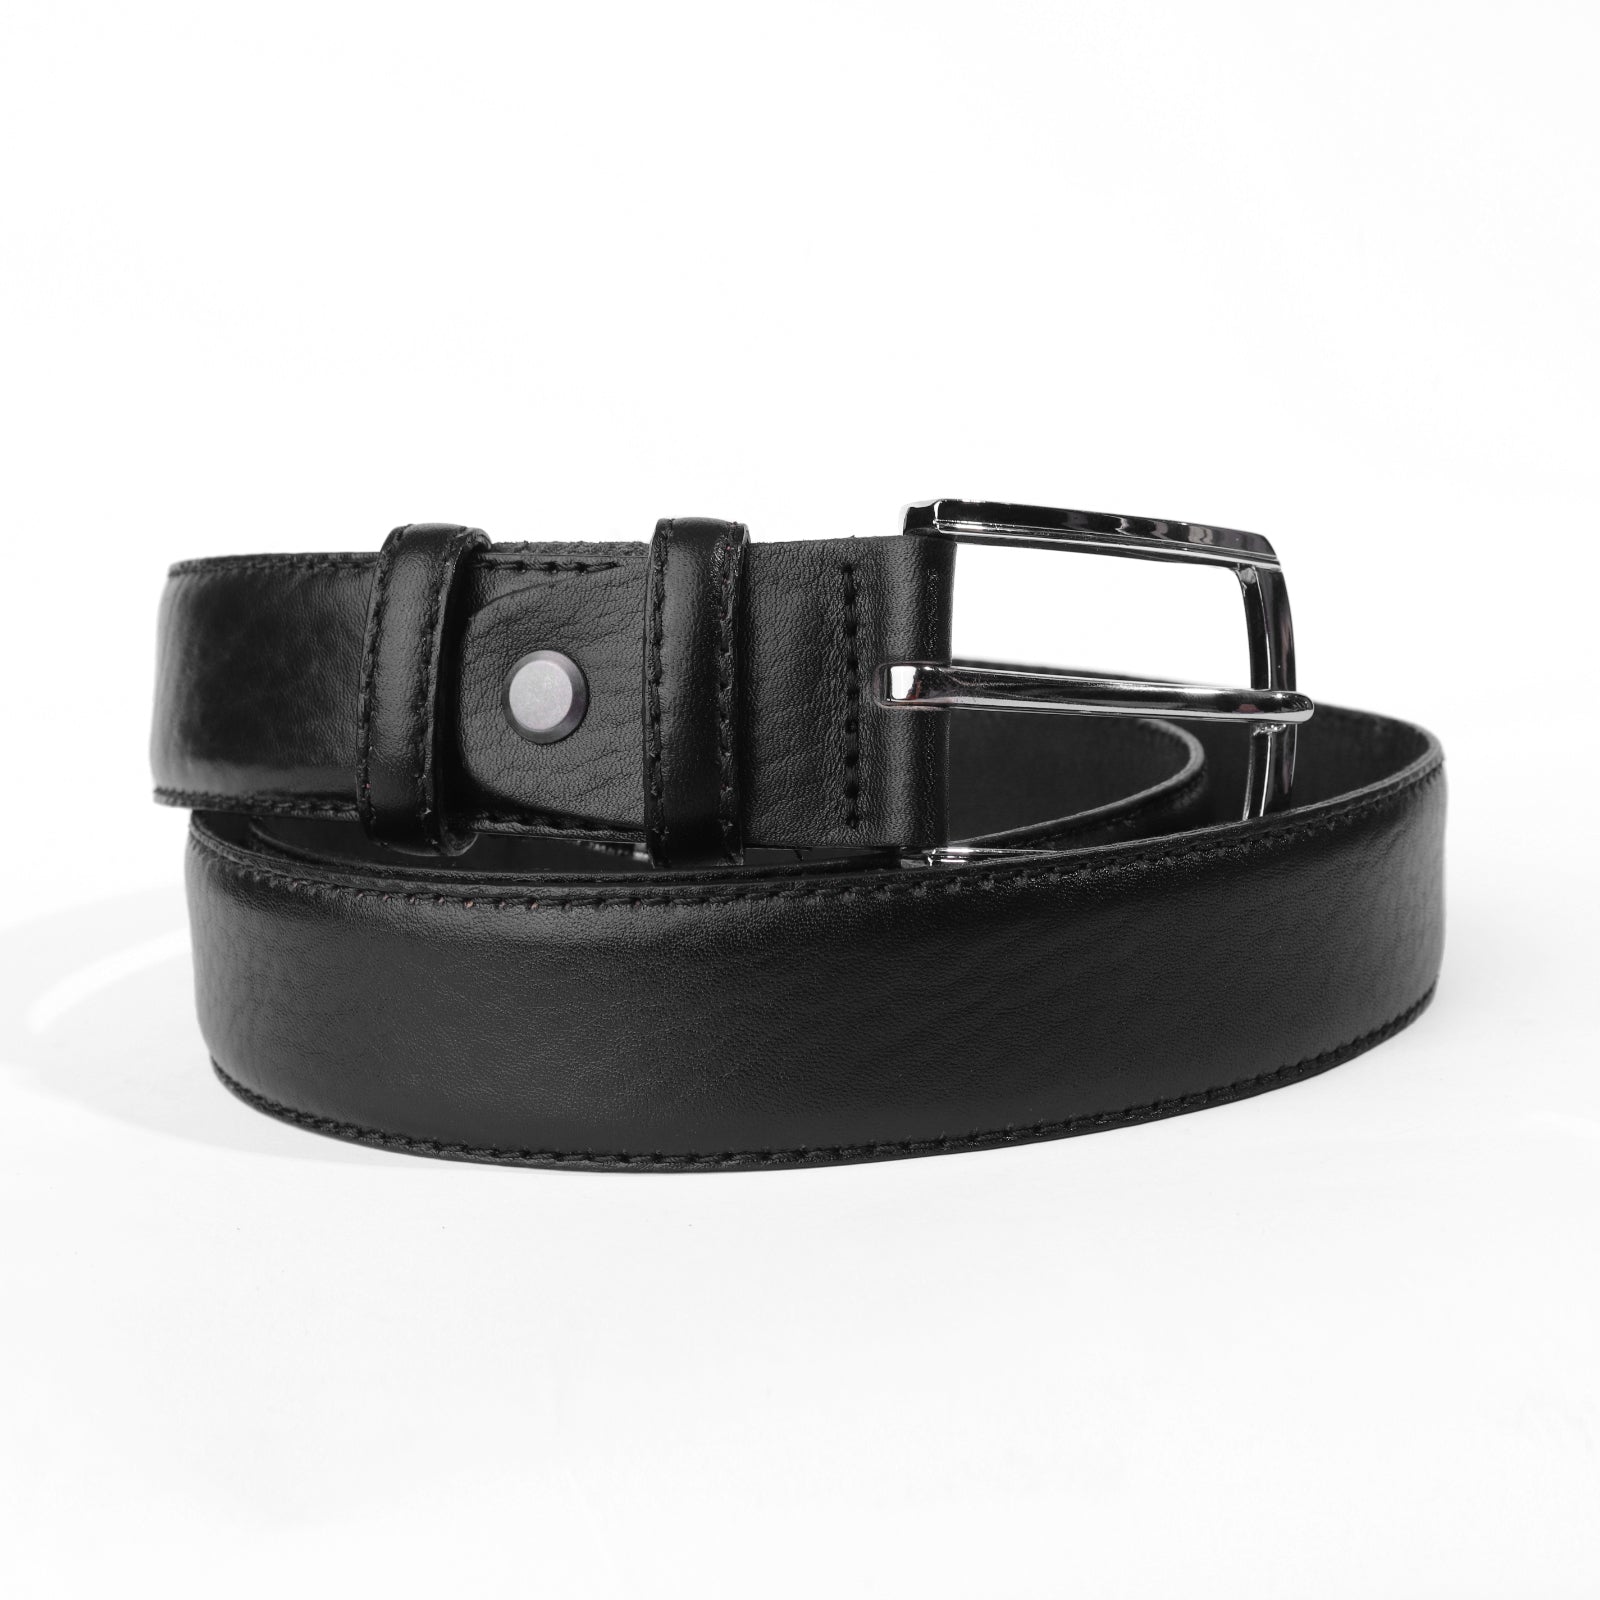 Premium Genuine Leather Belt For Men Black 1